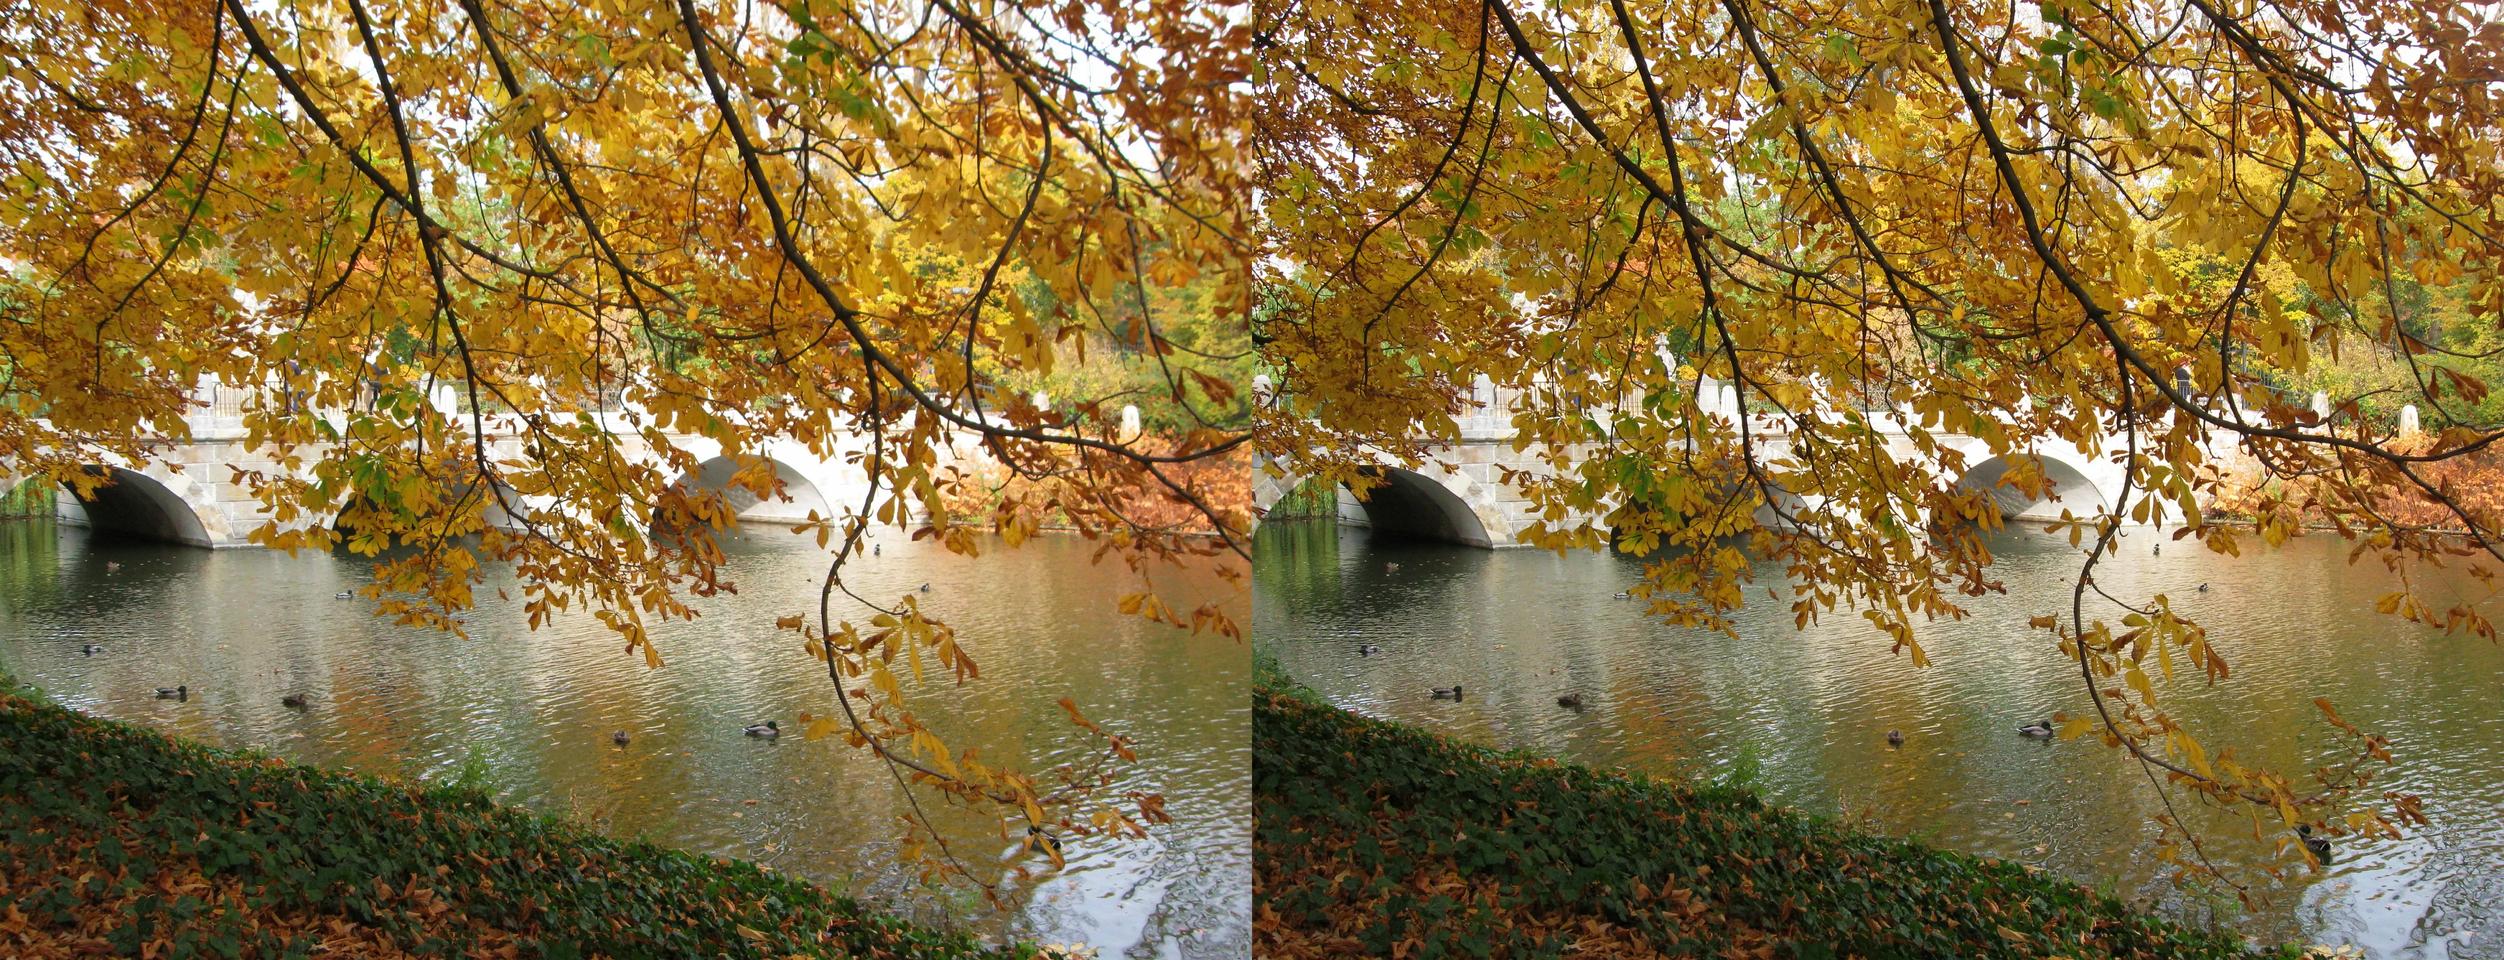 Autumn at Łazienki Park